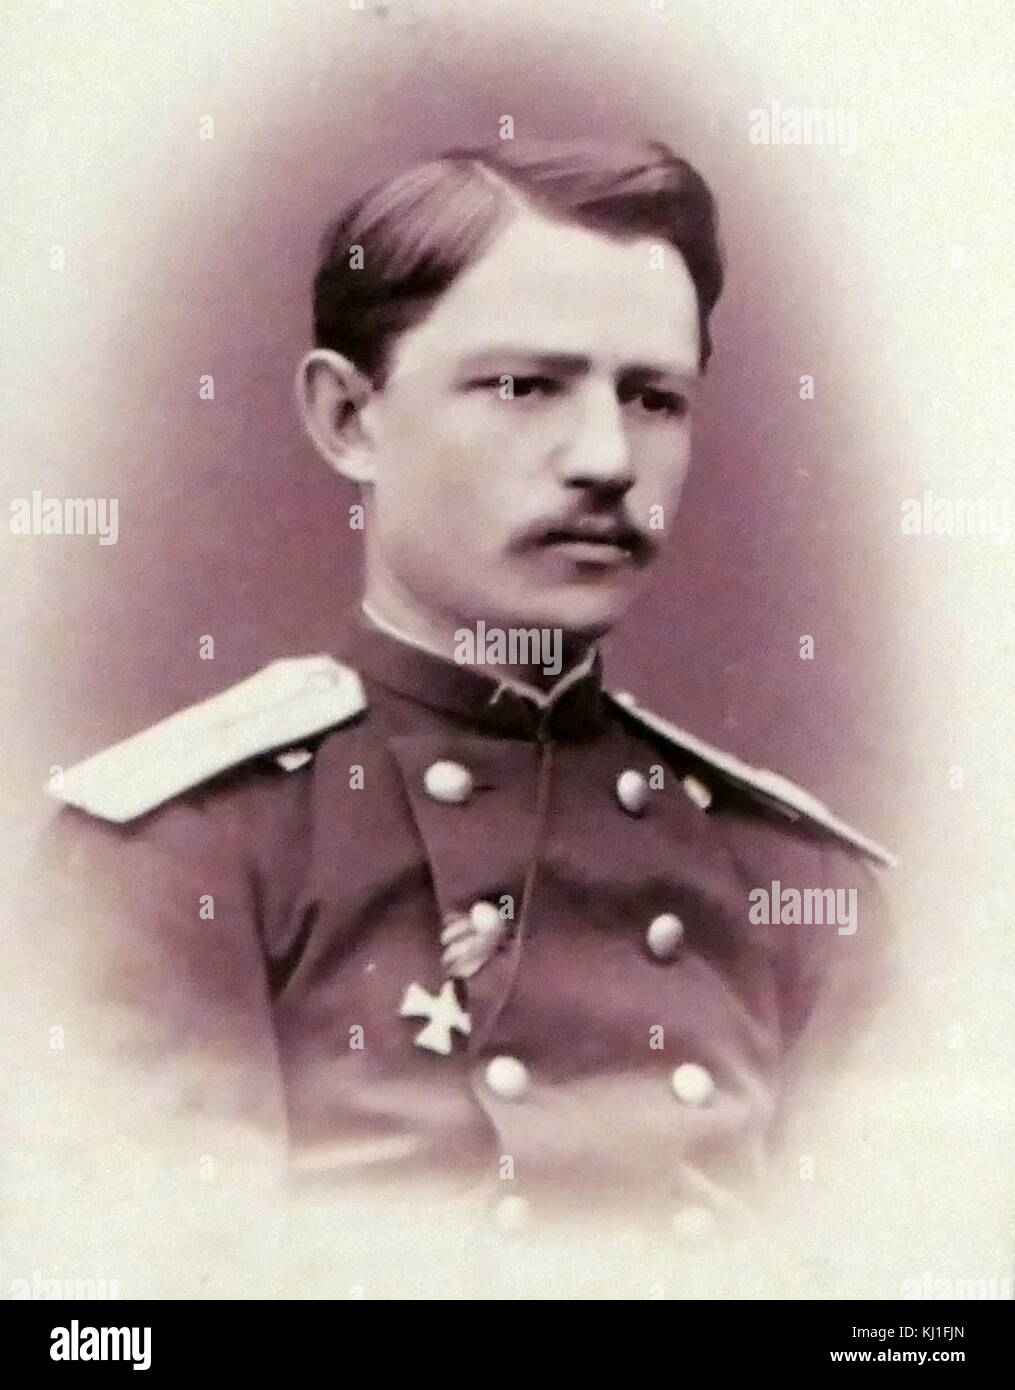 Dmitry L. Ivanov (1846 -1924) - ingeniero de minas, geólogo. Mientras estudiaba en la Universidad de Moscú en 1866, fue detenido en relación con el caso del intento de asesinato Karakozov DV del emperador Alexander II Foto de stock